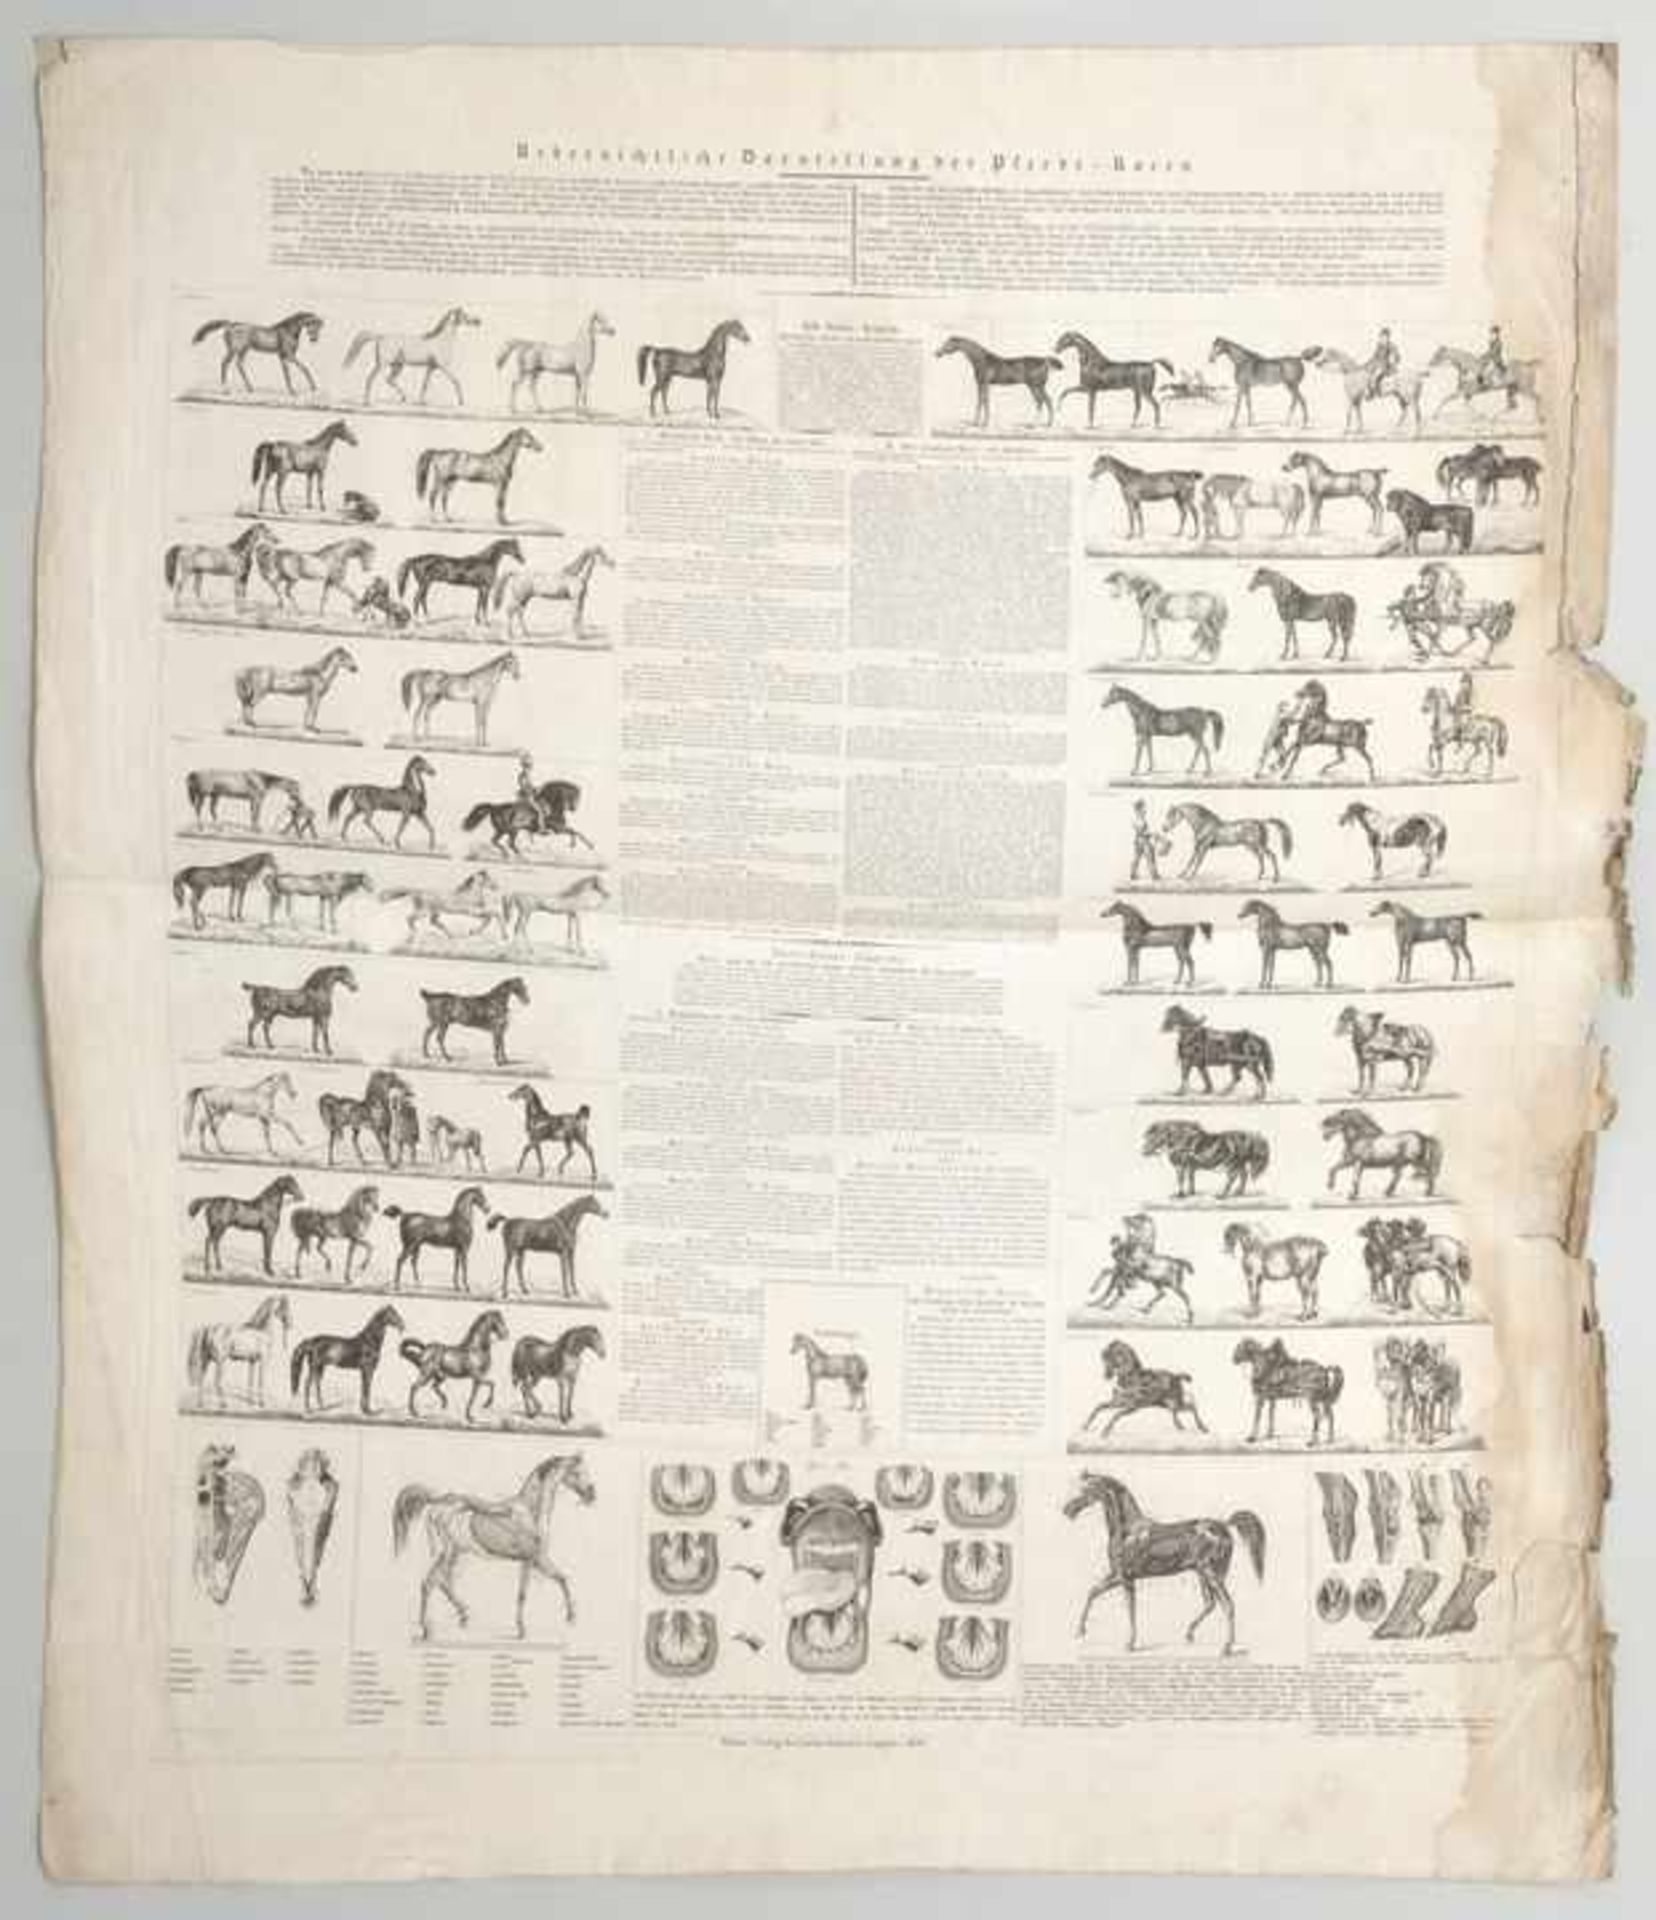 Pferderassen. 1838. "Übersichtliche Darstellung der Pferde-Racen". Gestochenes Schaubild mit